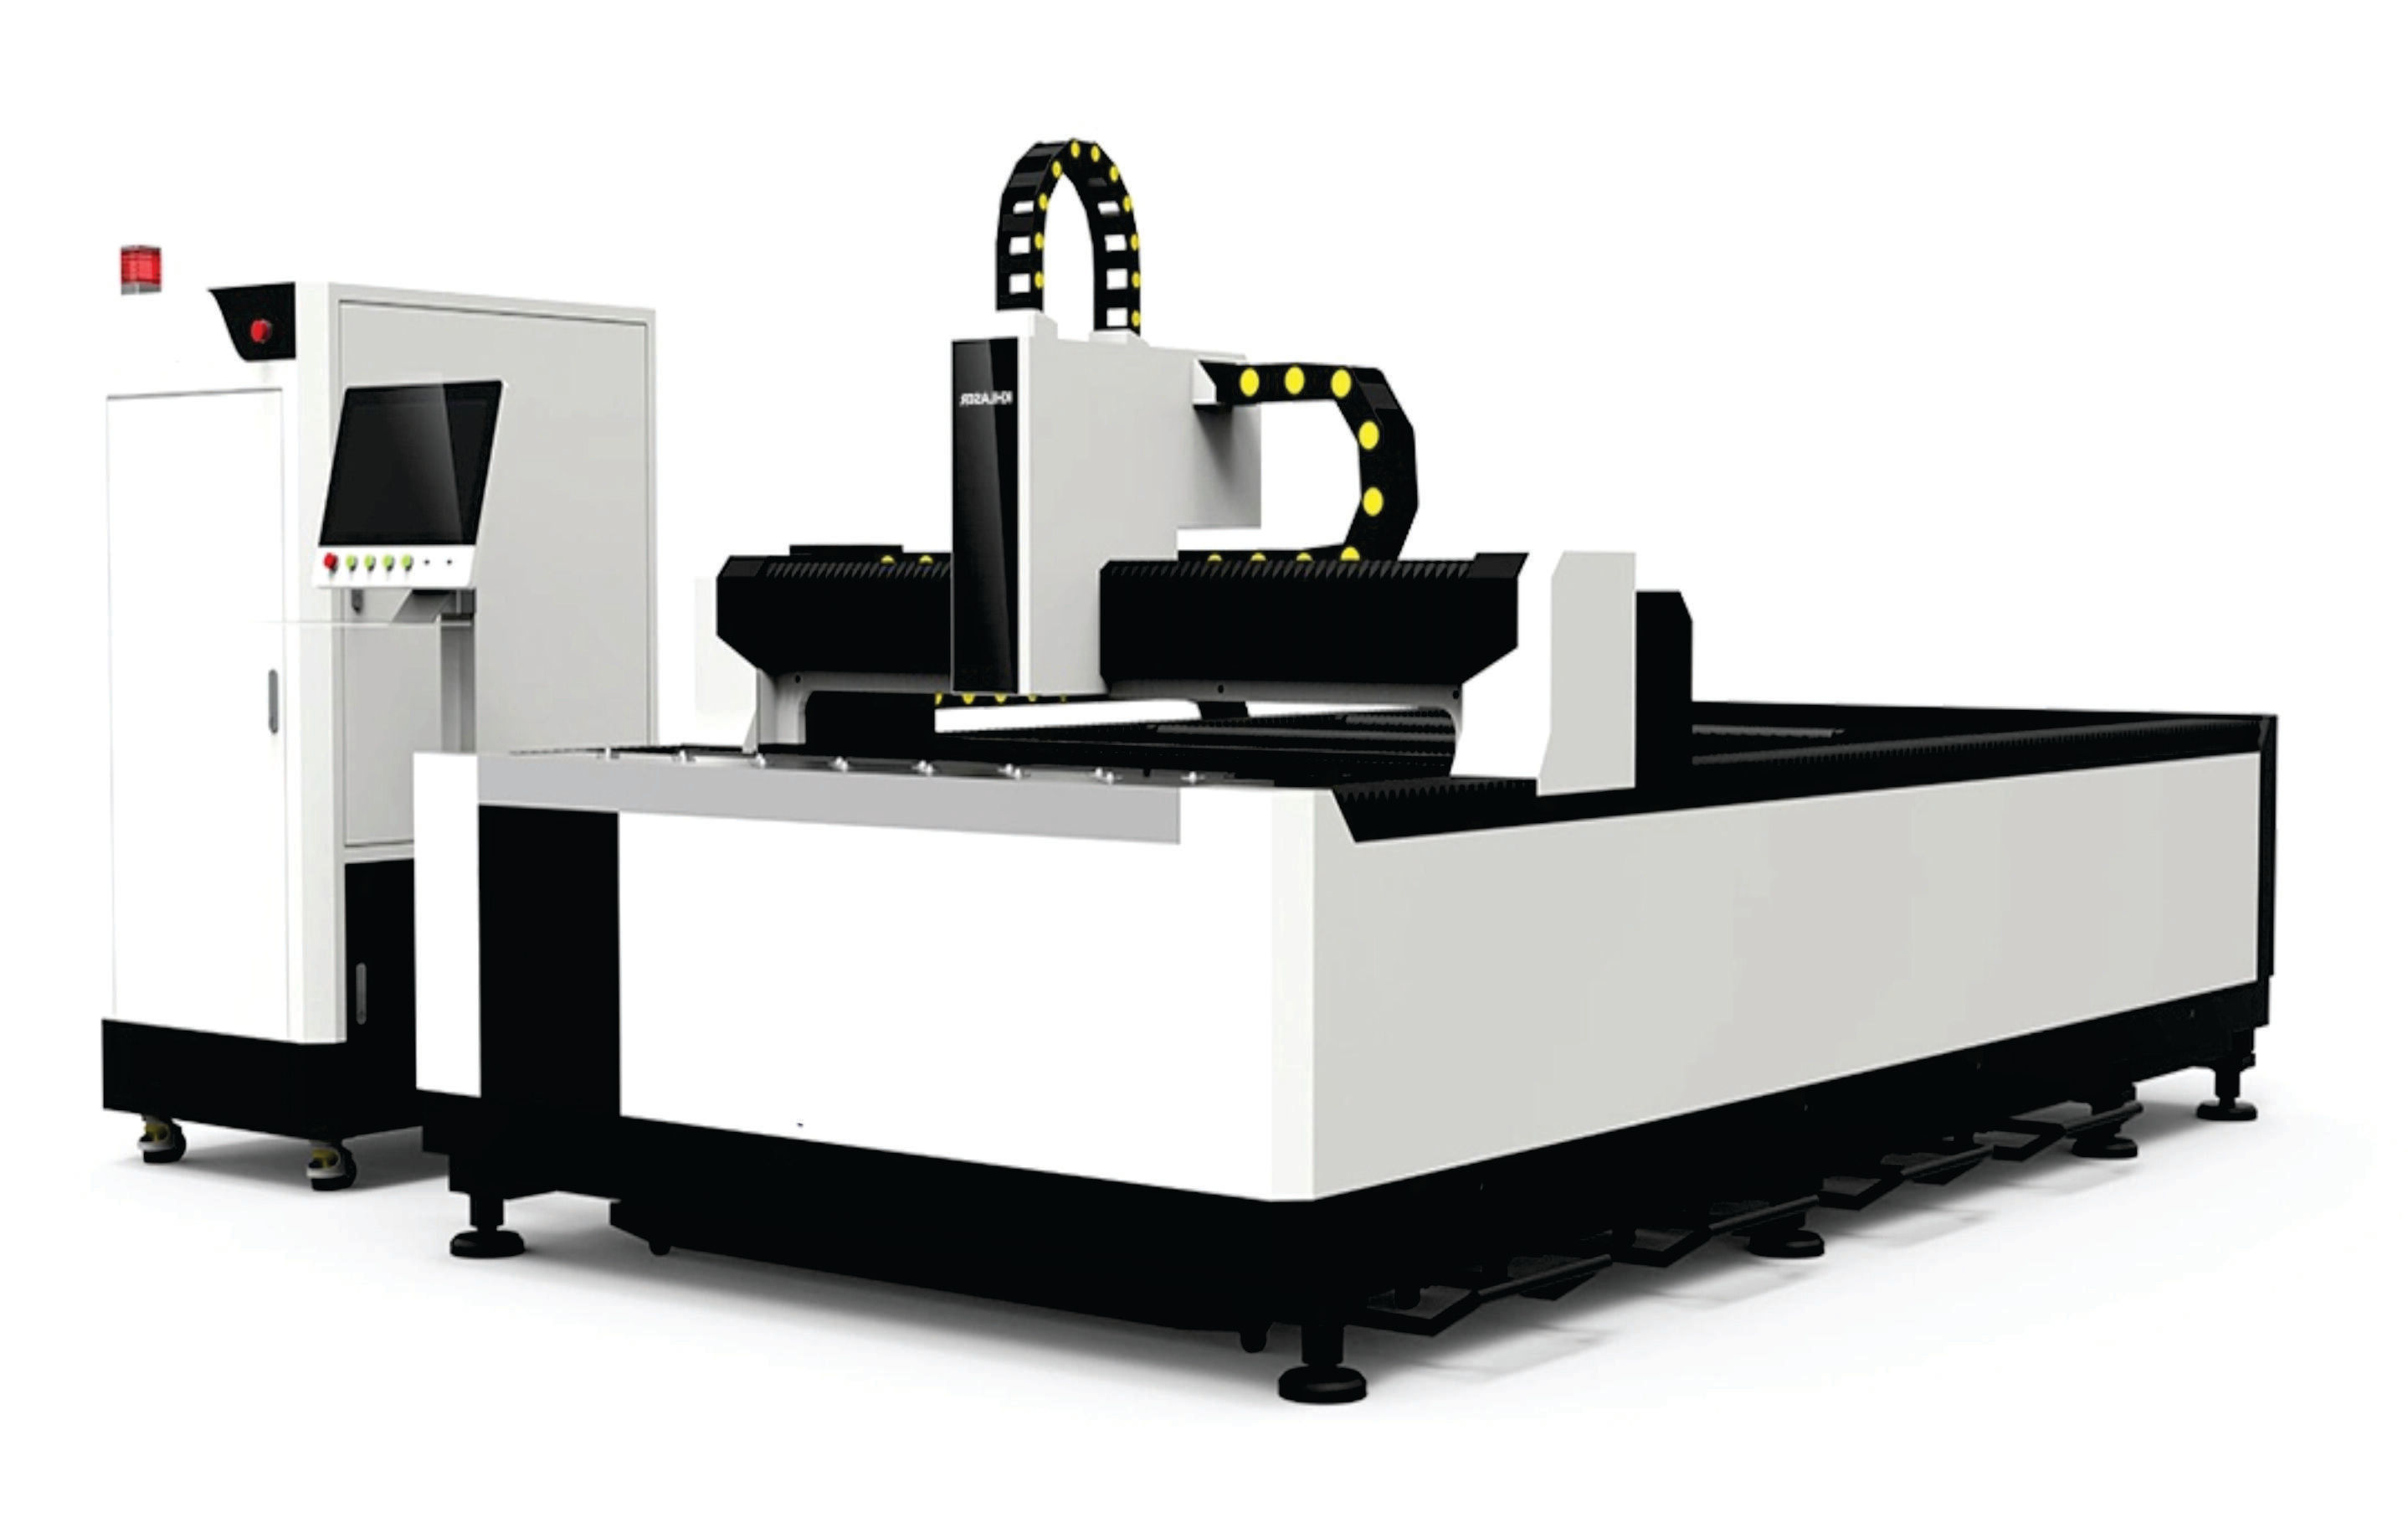 Fibre Laser Cutting Machine